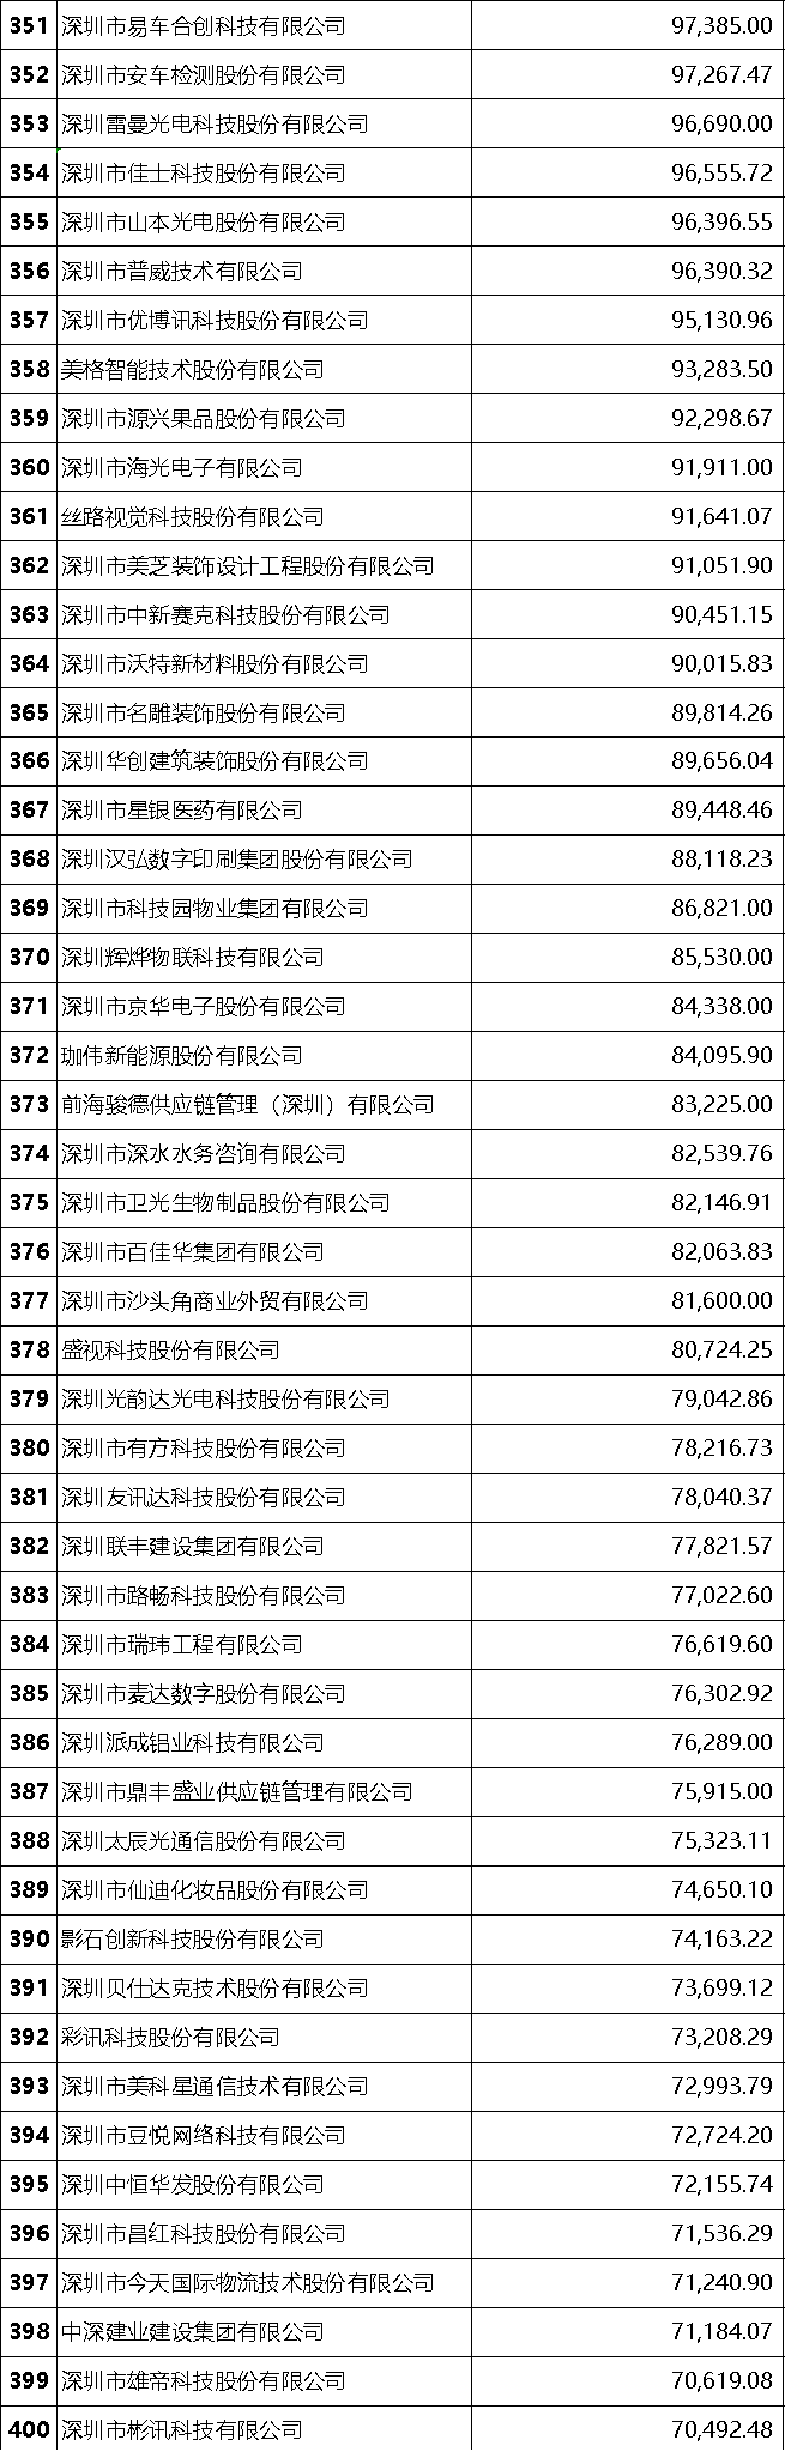 2020深圳500强企业榜单发布  2019年度总营业收入7.62万亿